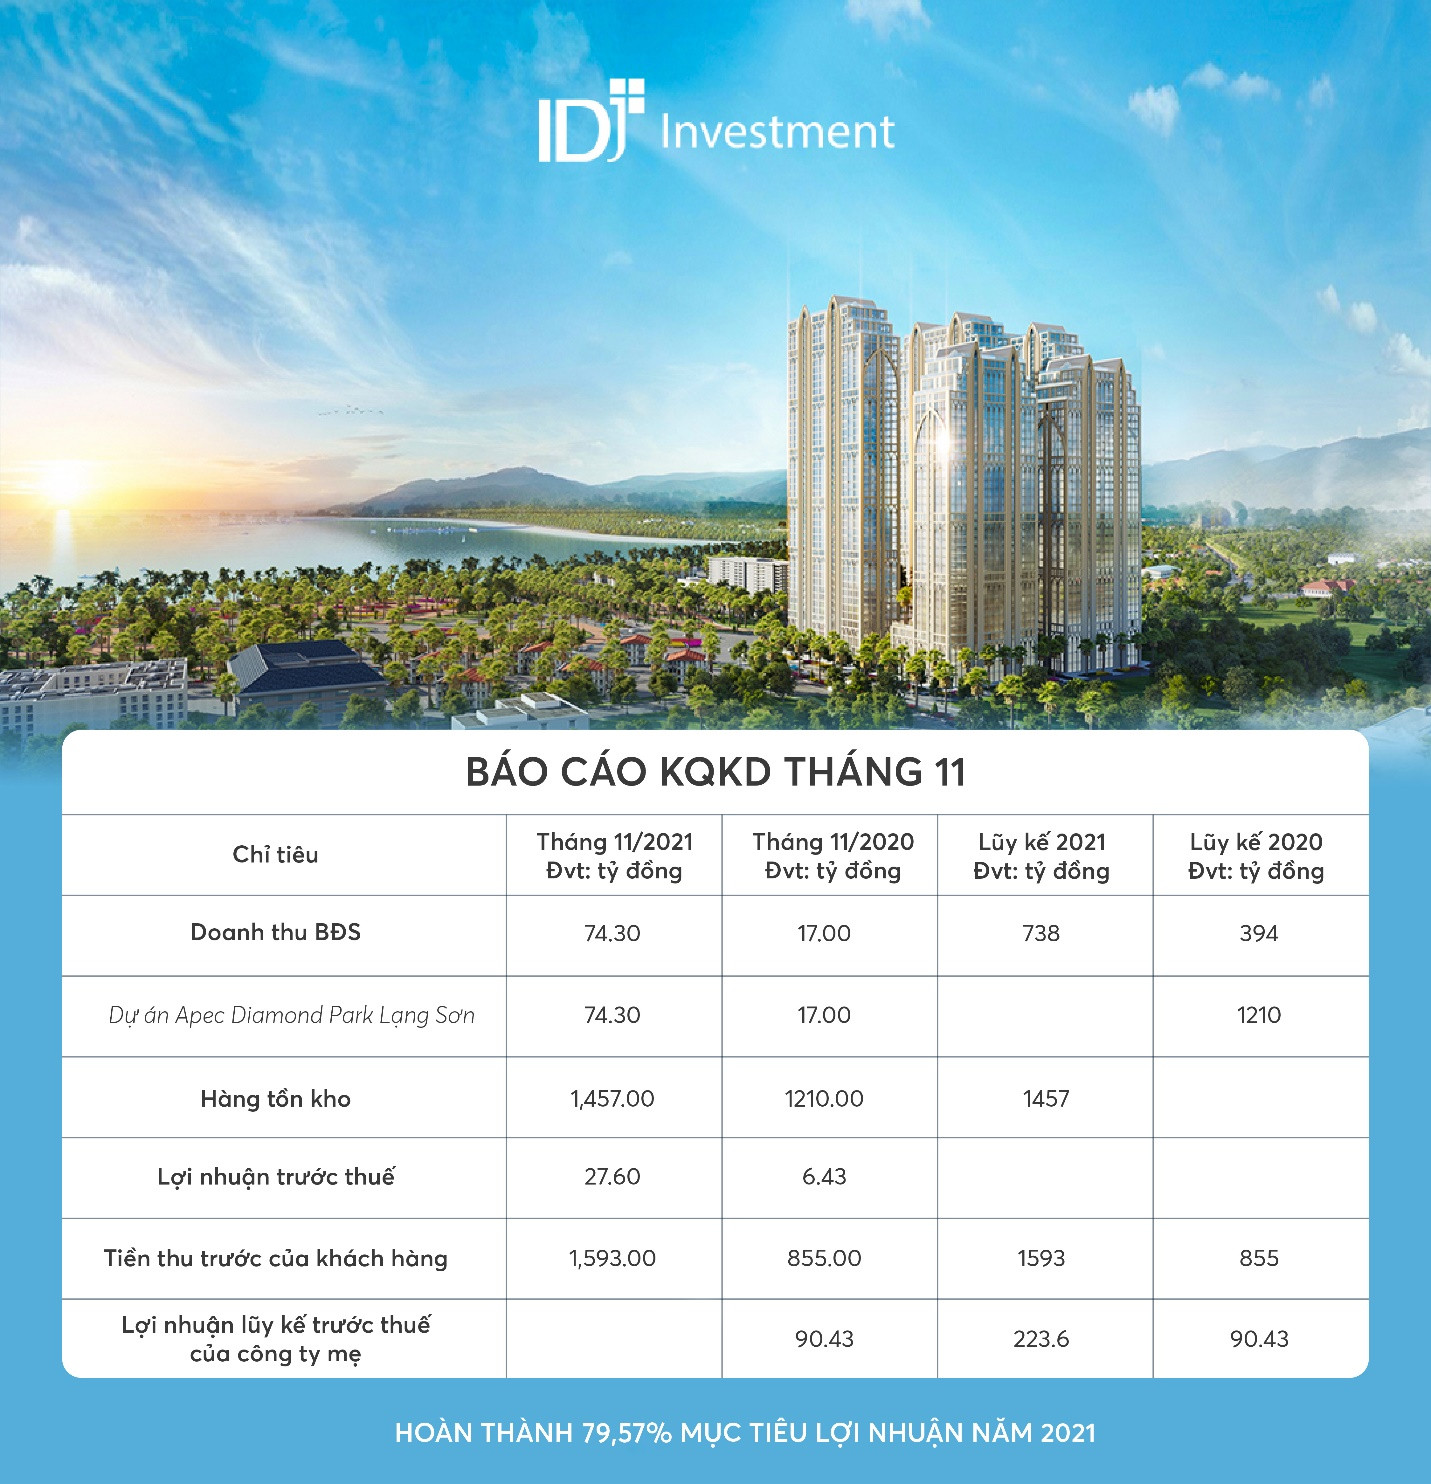 Báo cáo kết quả kinh doanh công ty CP Đầu tư IDJ Việt Nam (HNX: IDJ).